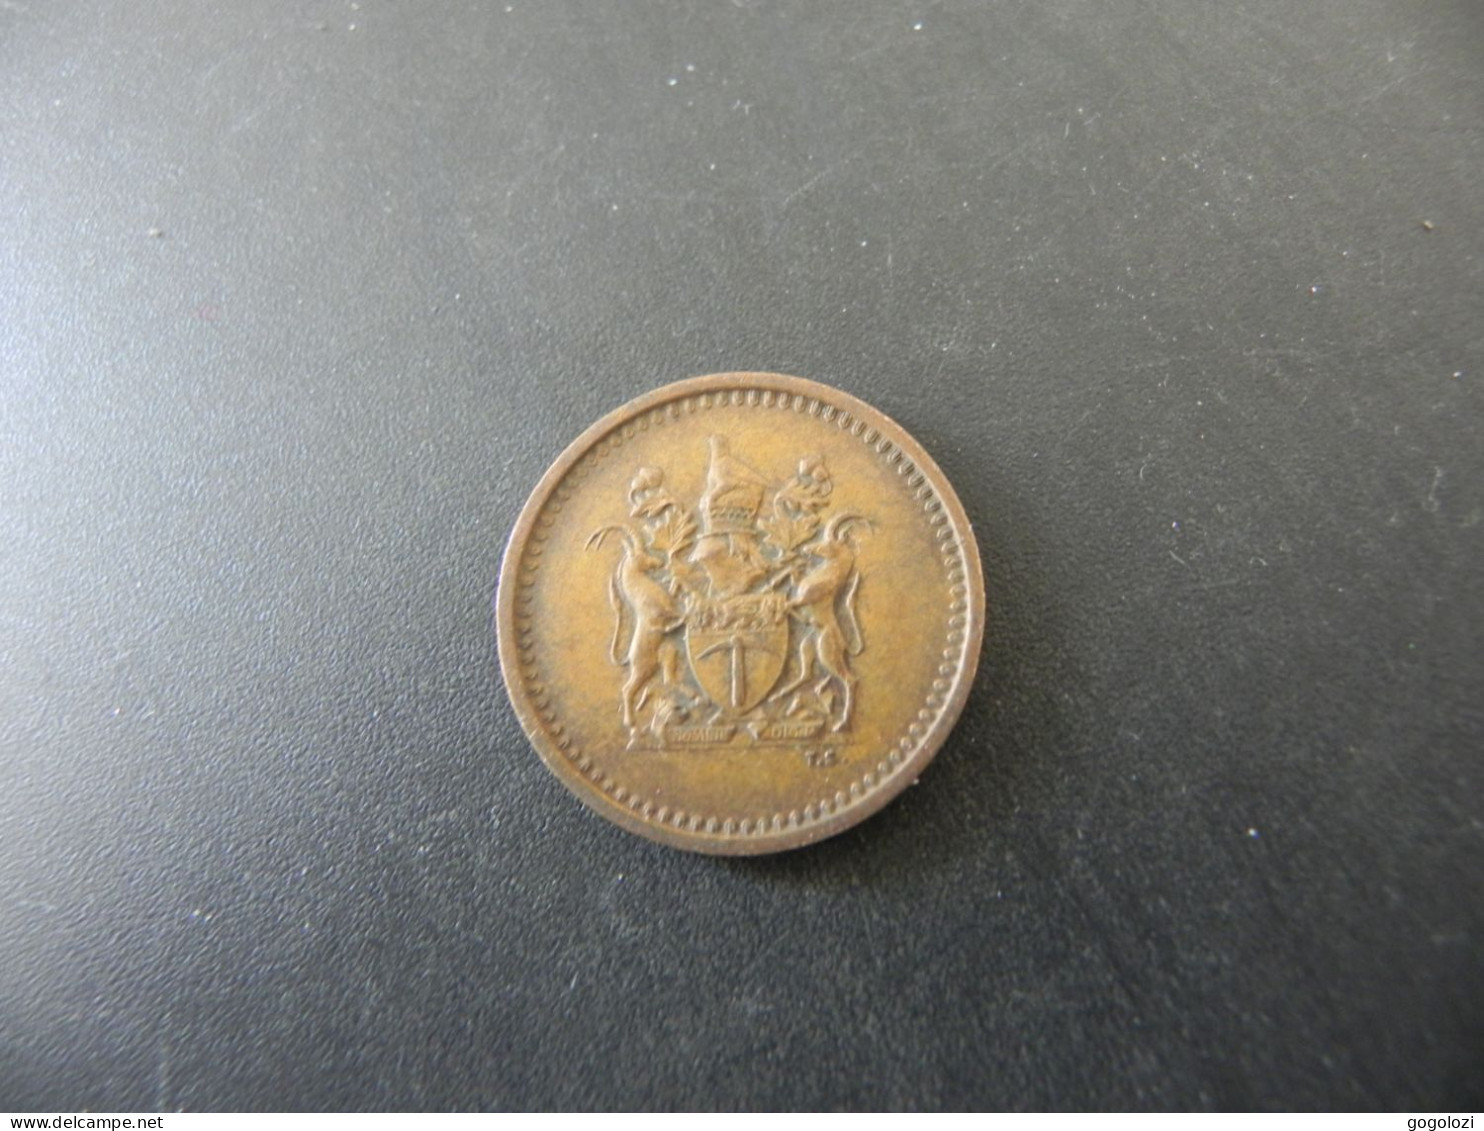 Rhodesia 1 Cent 1970 - Rhodésie